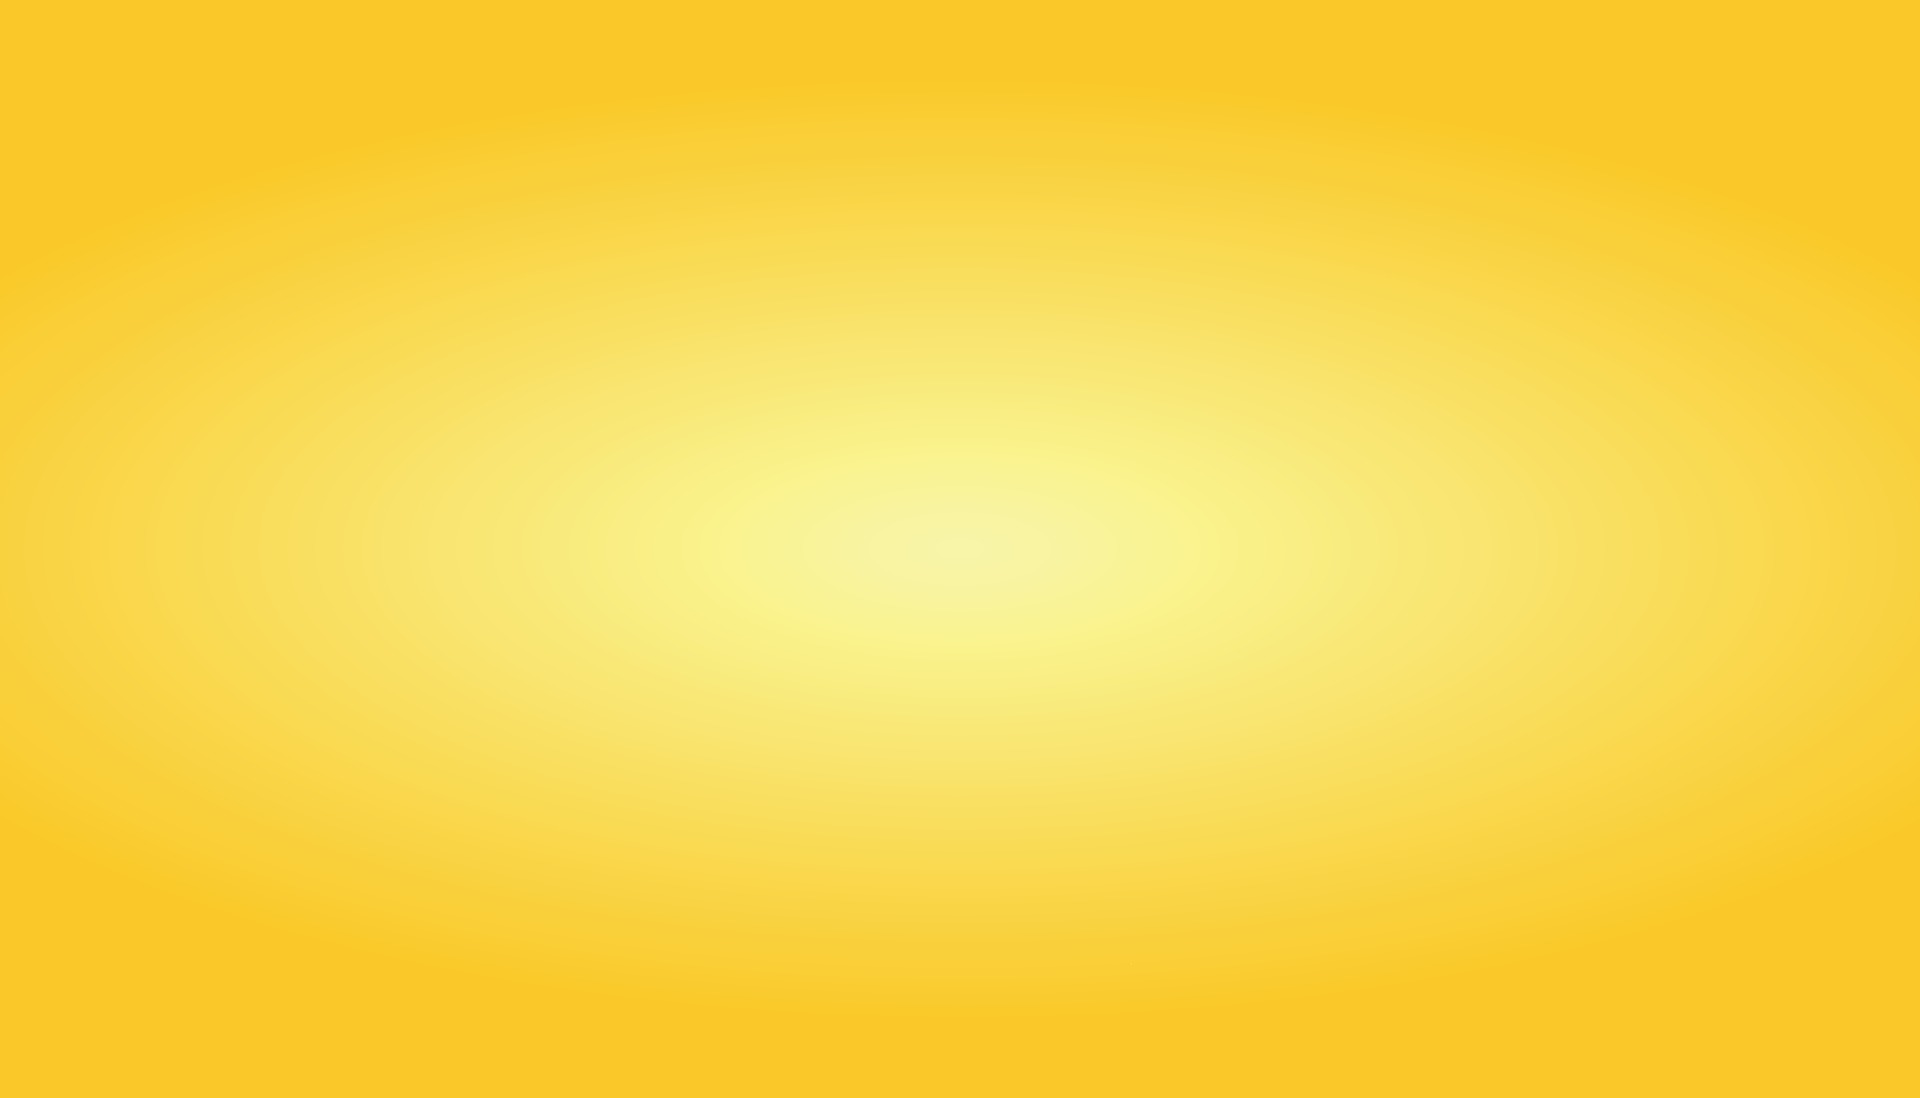 Đồ họa vector hình nền gradient màu vàng sẽ khiến cho không gian của bạn trở nên đẹp mắt và tinh tế. Với sự kết hợp tinh tế của các gam màu vàng, đồ họa vector hình nền gradient màu vàng sẽ mang đến cho bạn cảm giác ấm cúng và trang nhã. Hãy cùng khám phá những đồ họa vector hình nền gradient màu vàng đẹp lung linh!